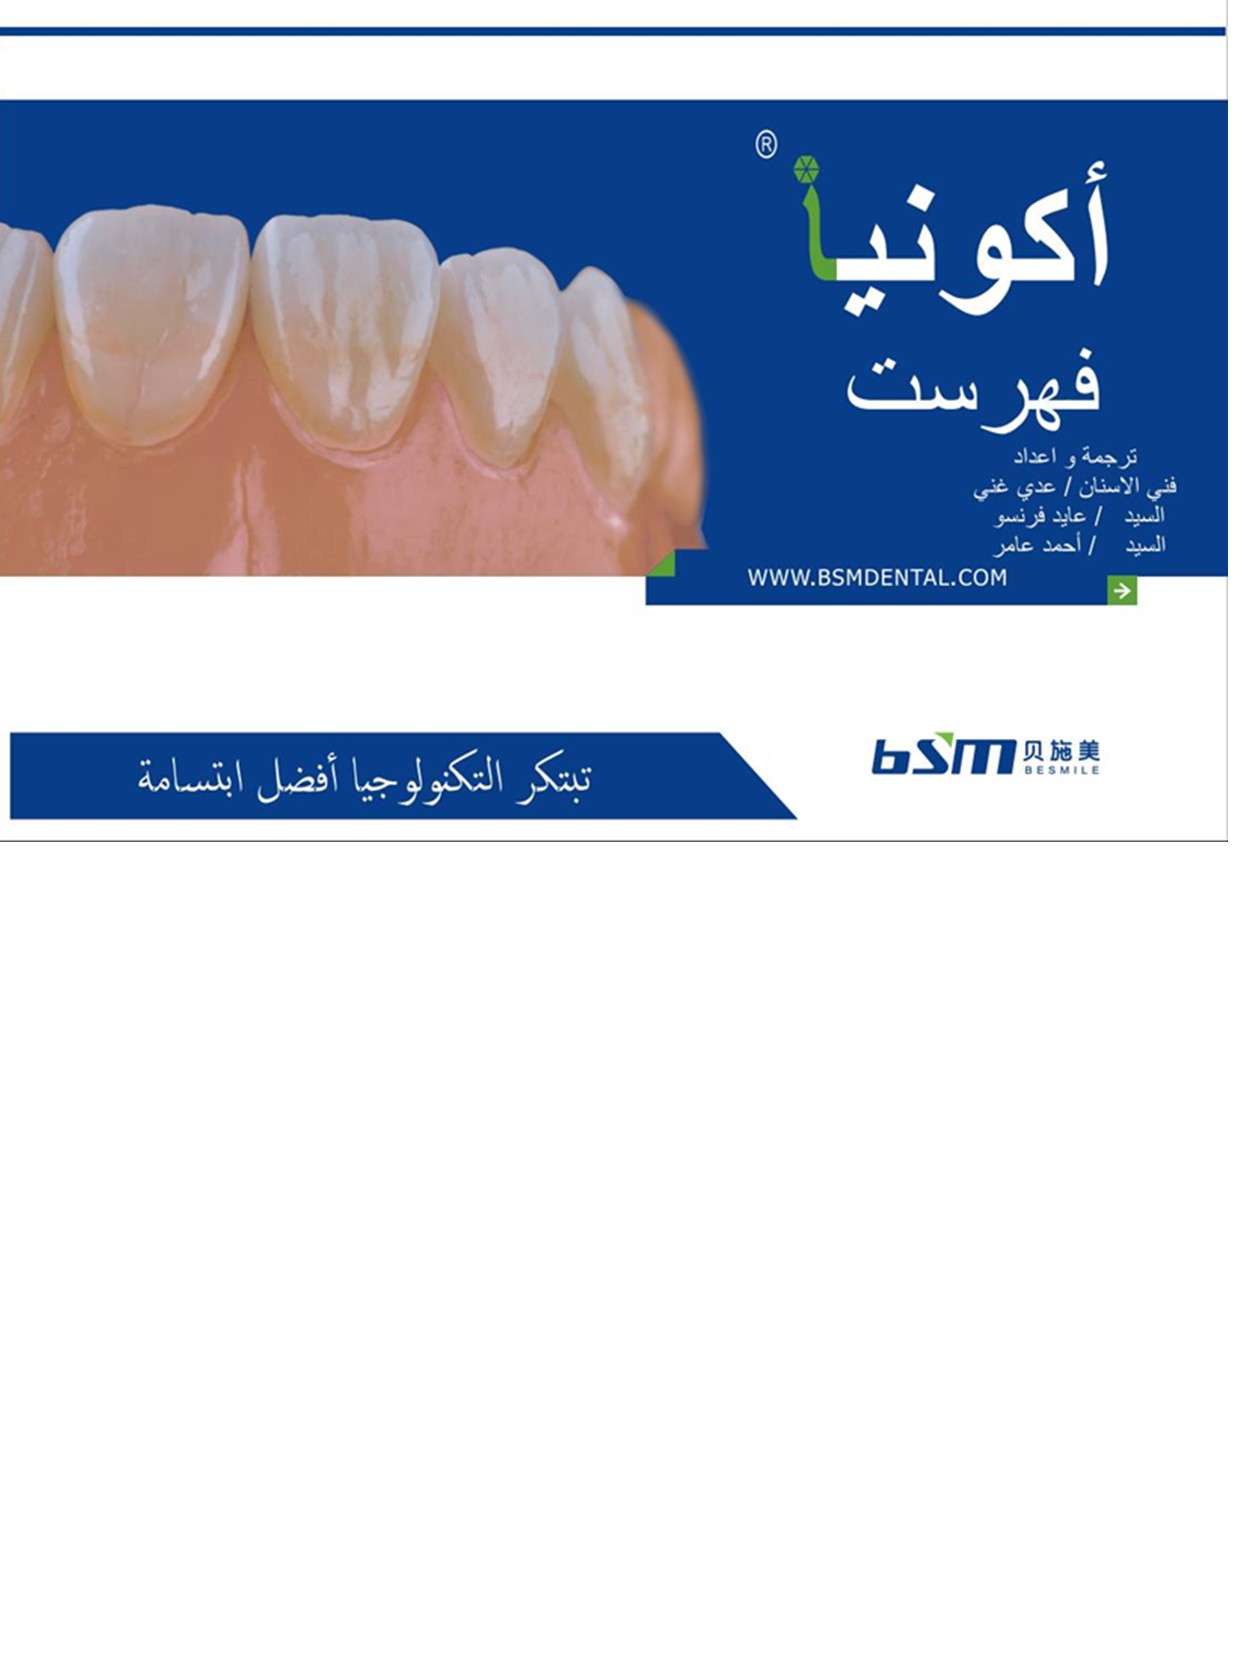 Aconia Catalogue Brochure-Arabic version